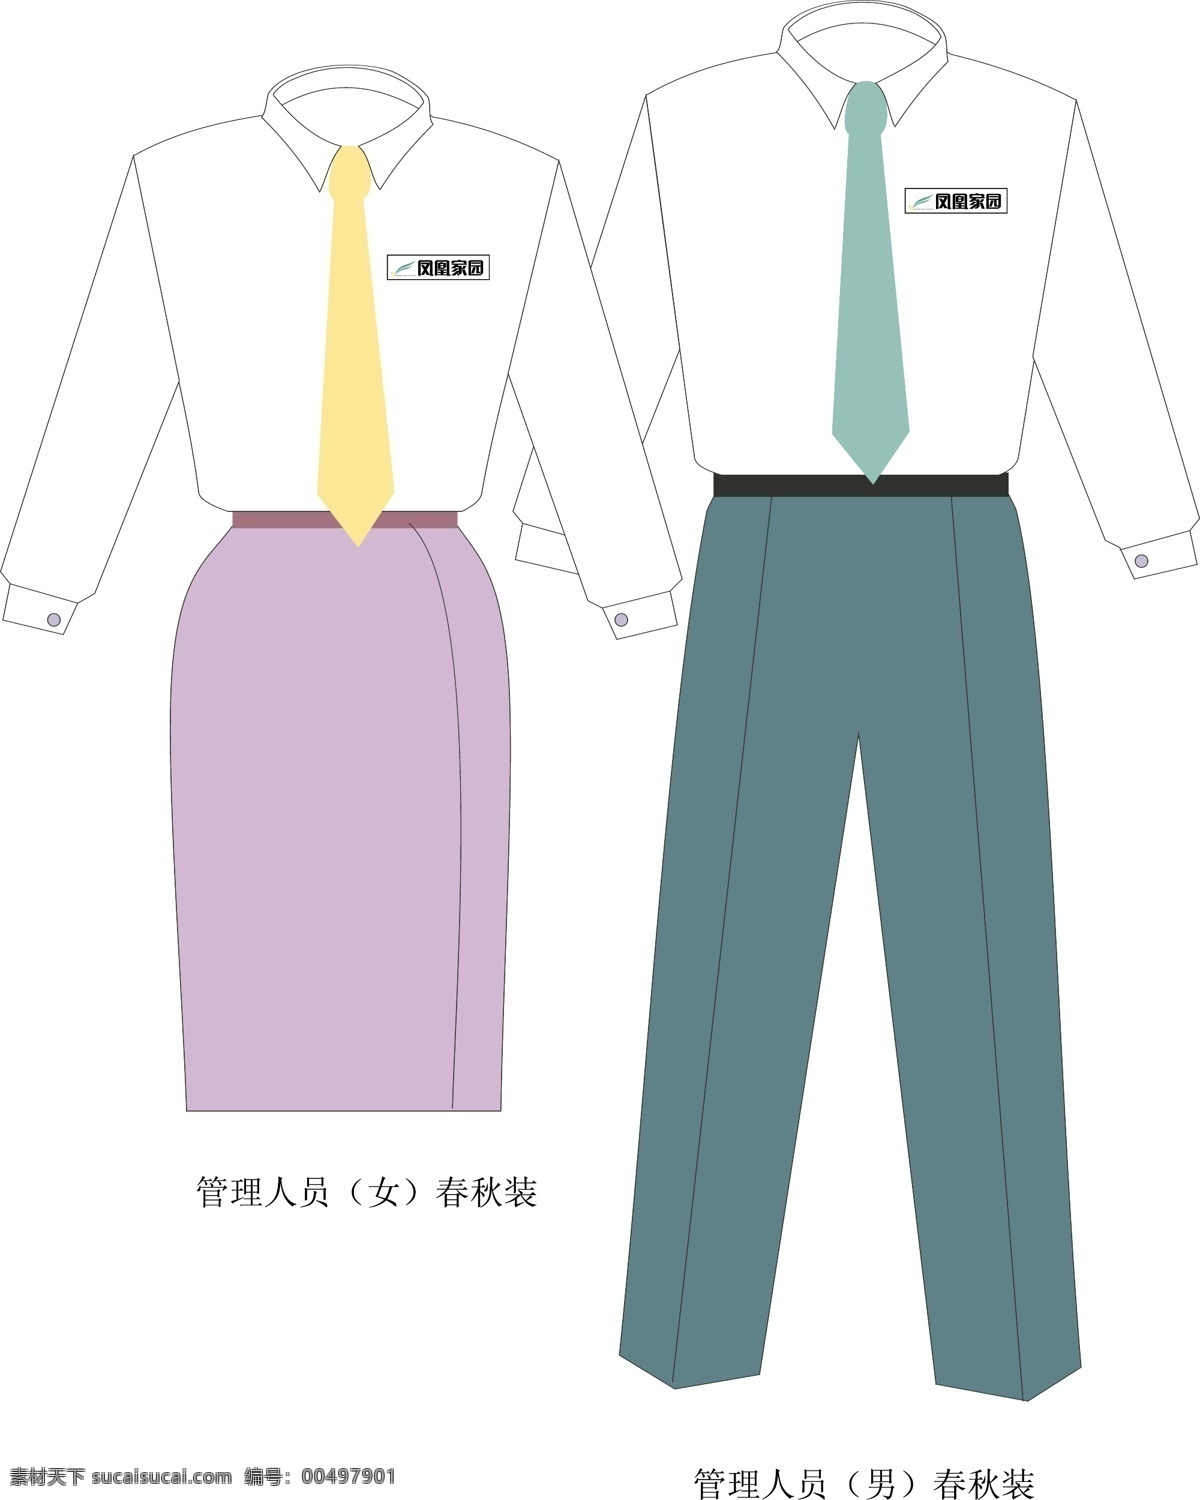 企业管理 人员 服装设计 工服设计 矢量 其他服装素材